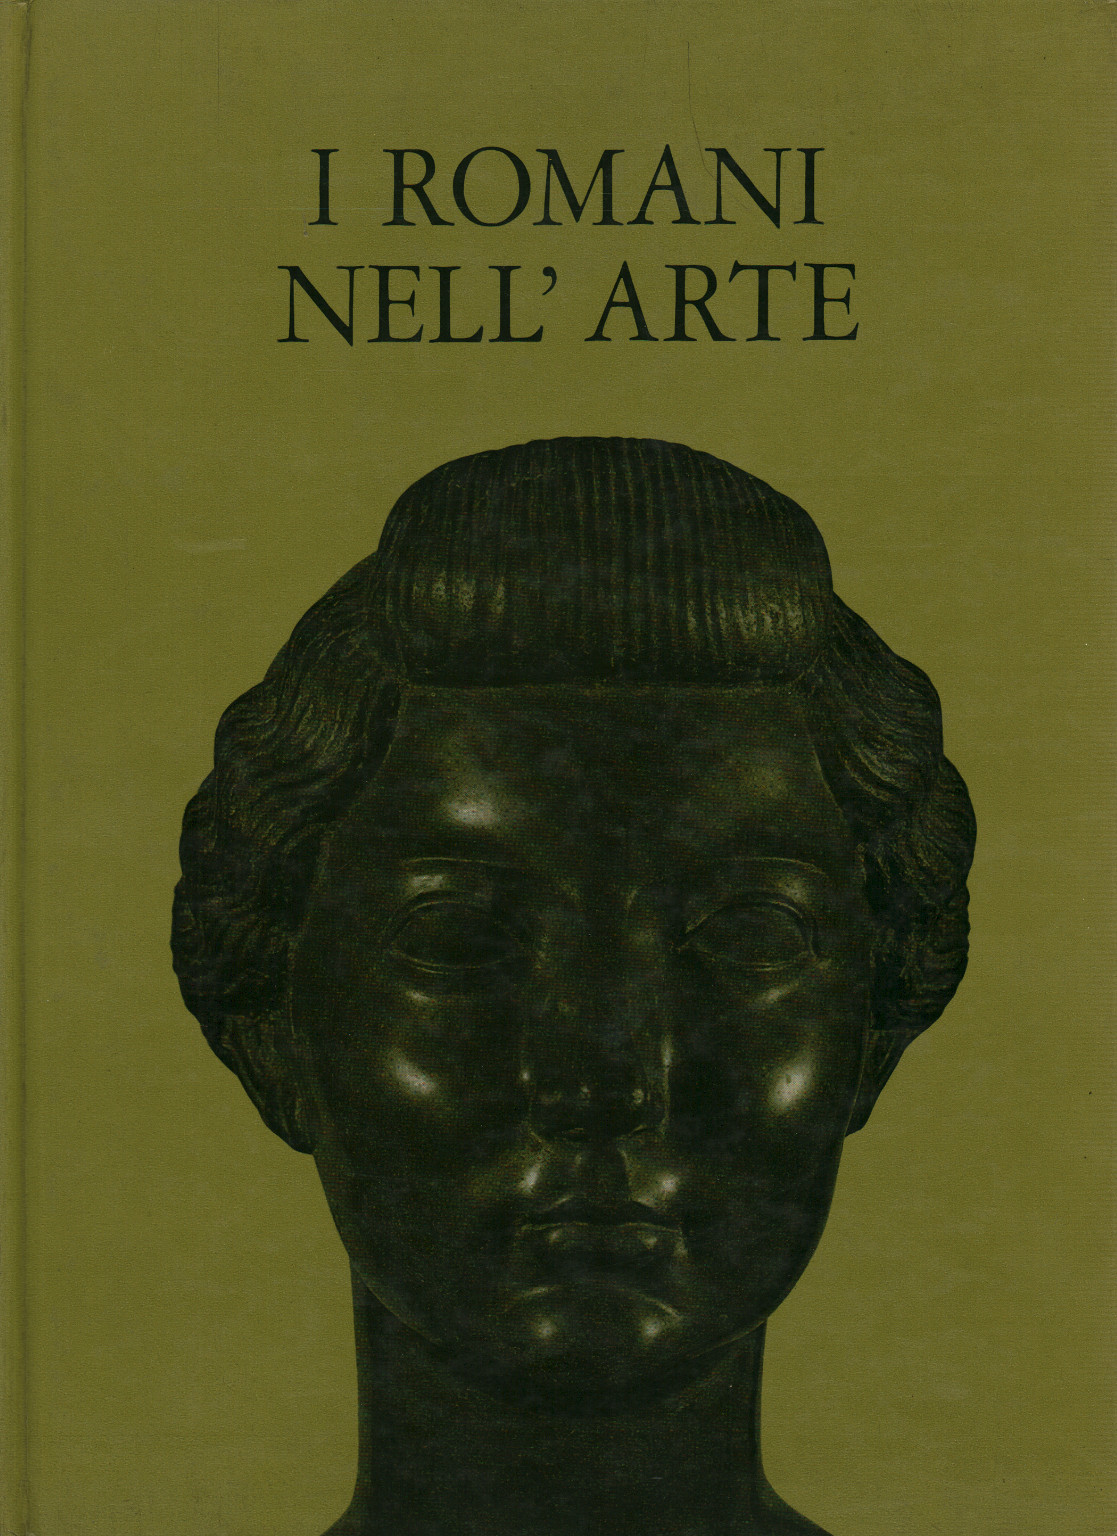 I Romani nell arte, s.a.